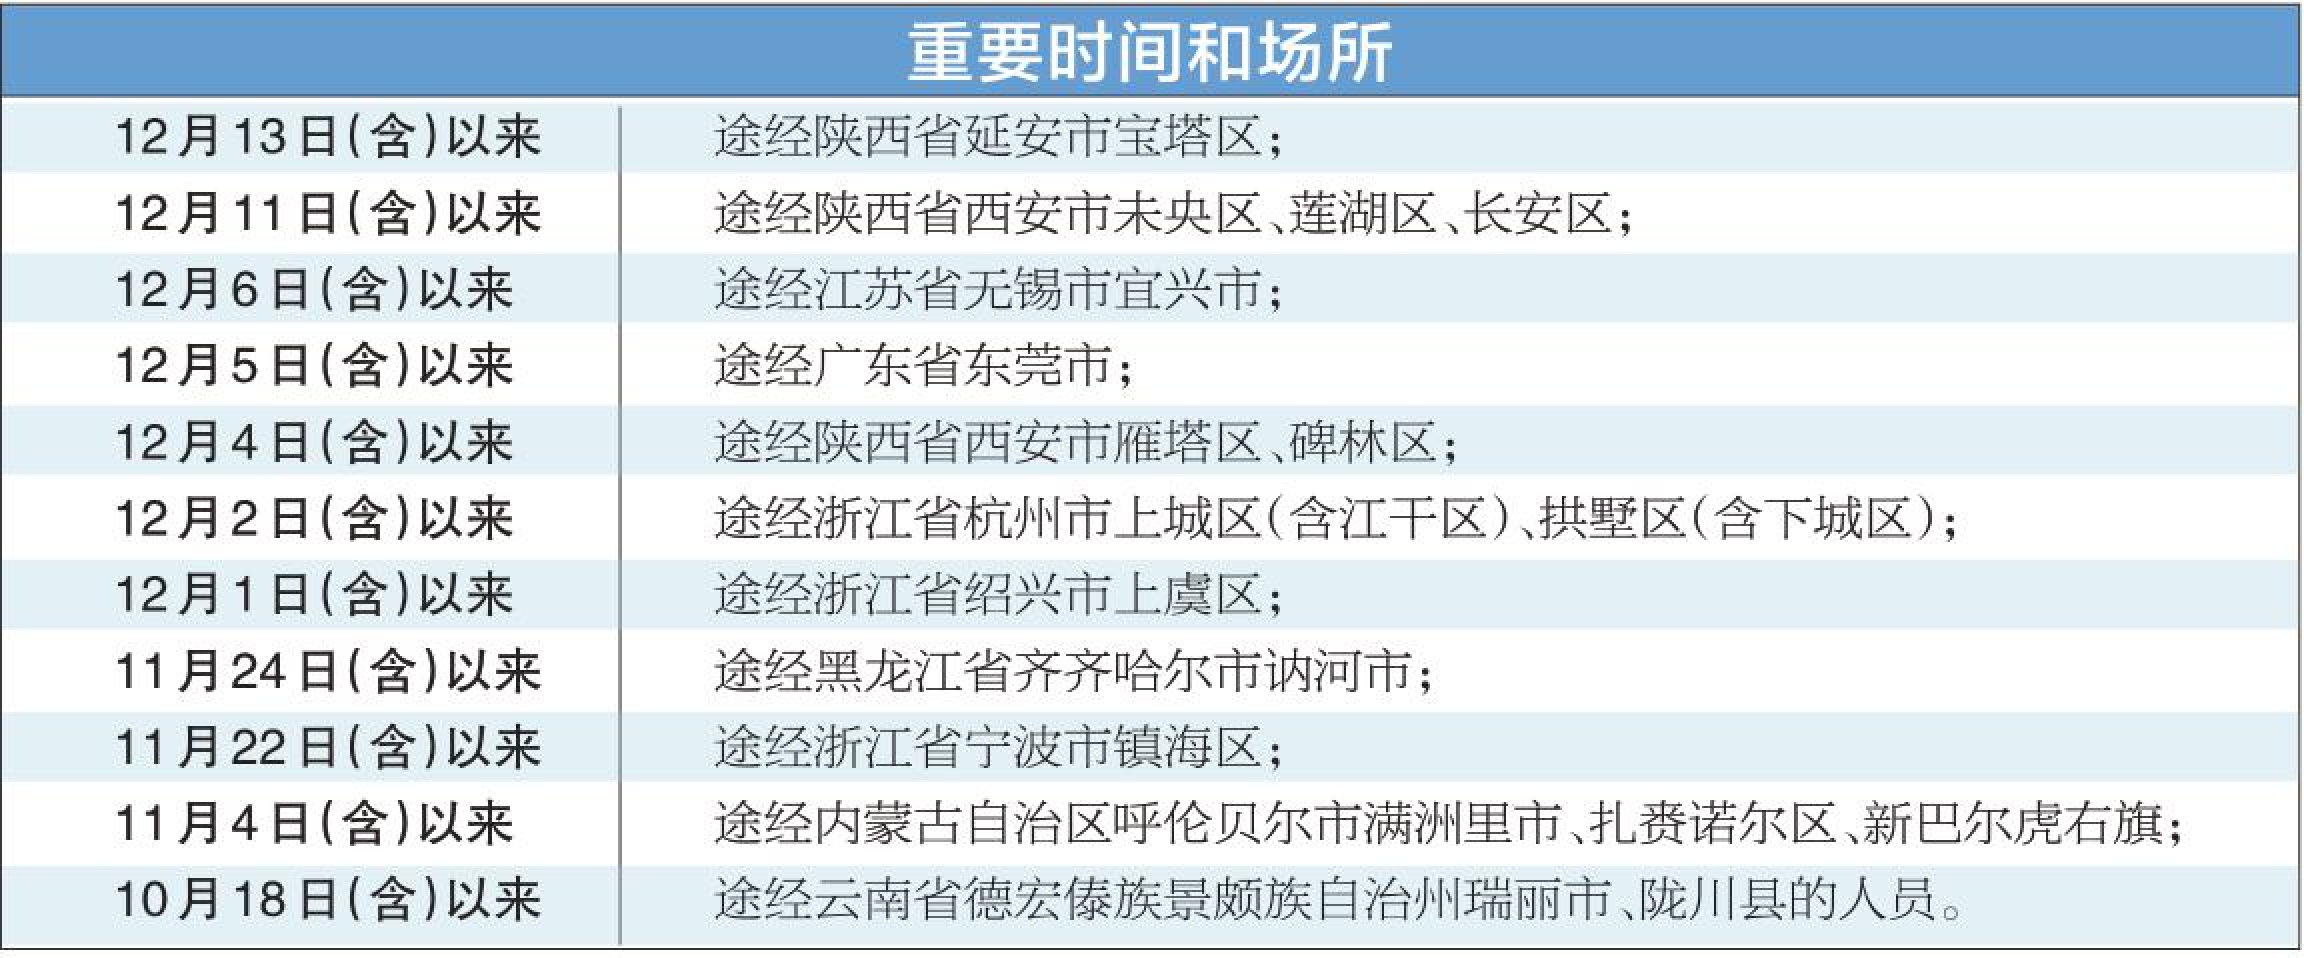 市疾控提醒风险人员主动报备 倡导在京过年 非必要不出京